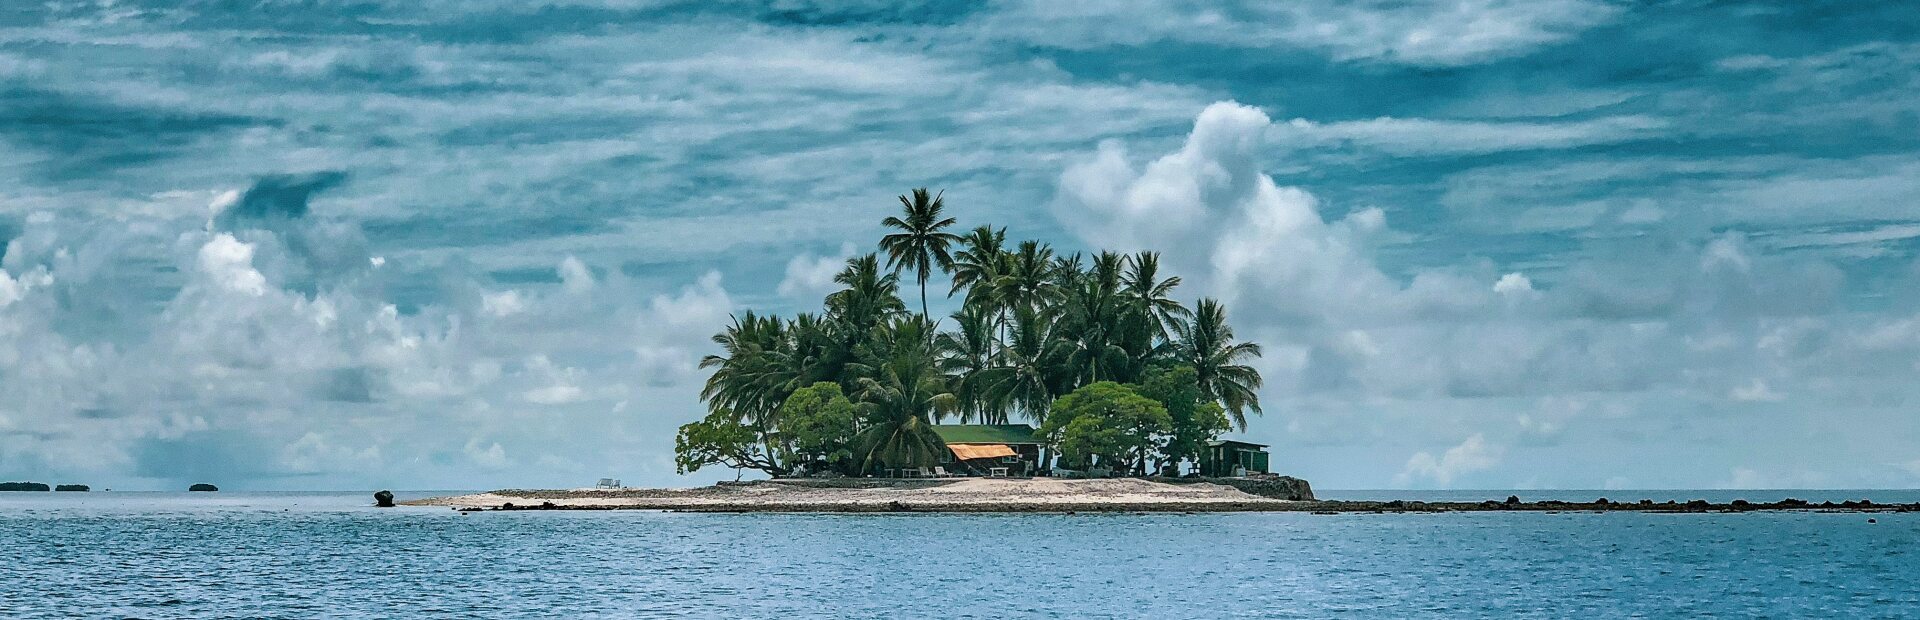 Insel mit Palmen im Meer, Wolken am Himmel